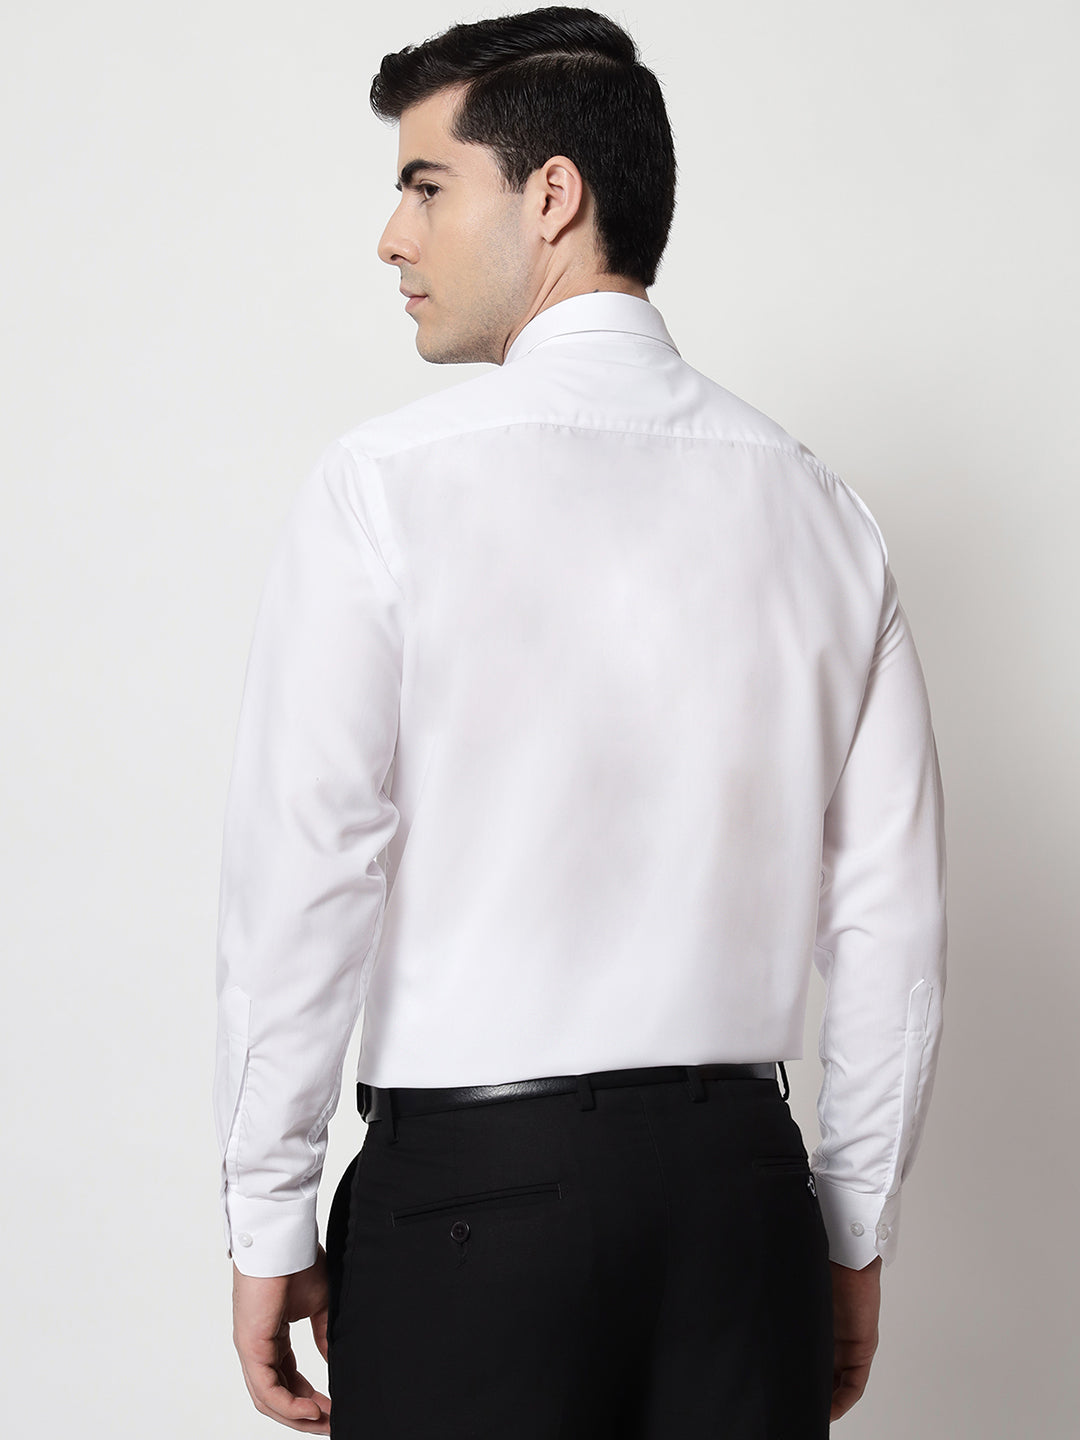 Men's Formal Shirt White